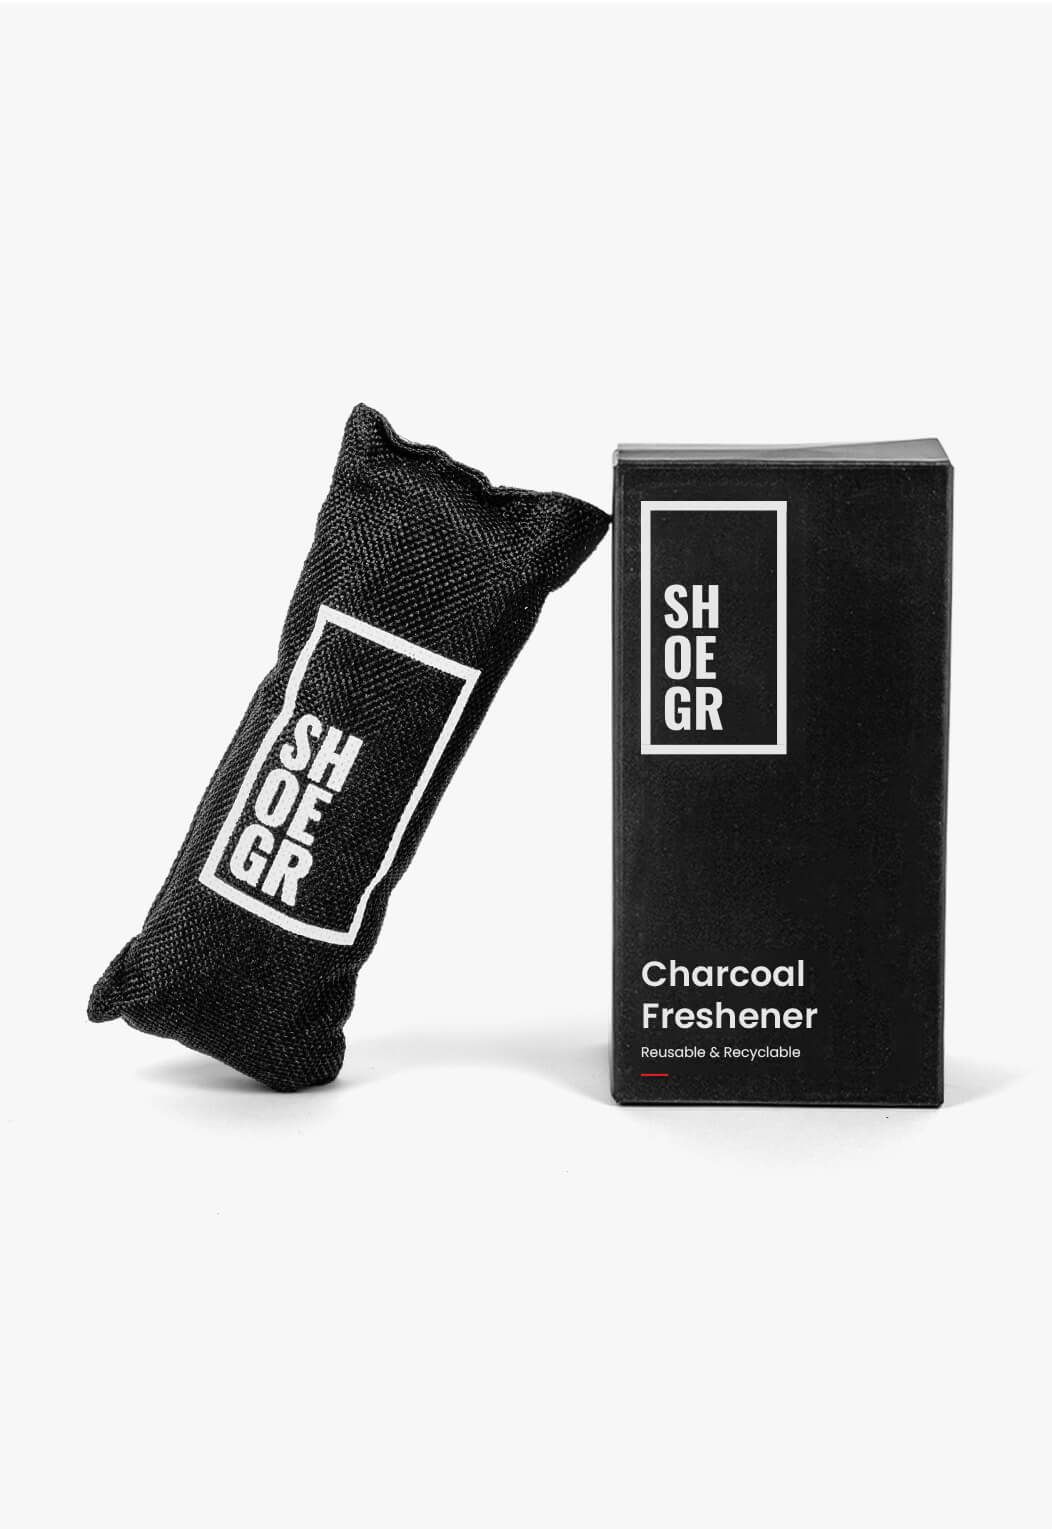 Charcoal Freshener